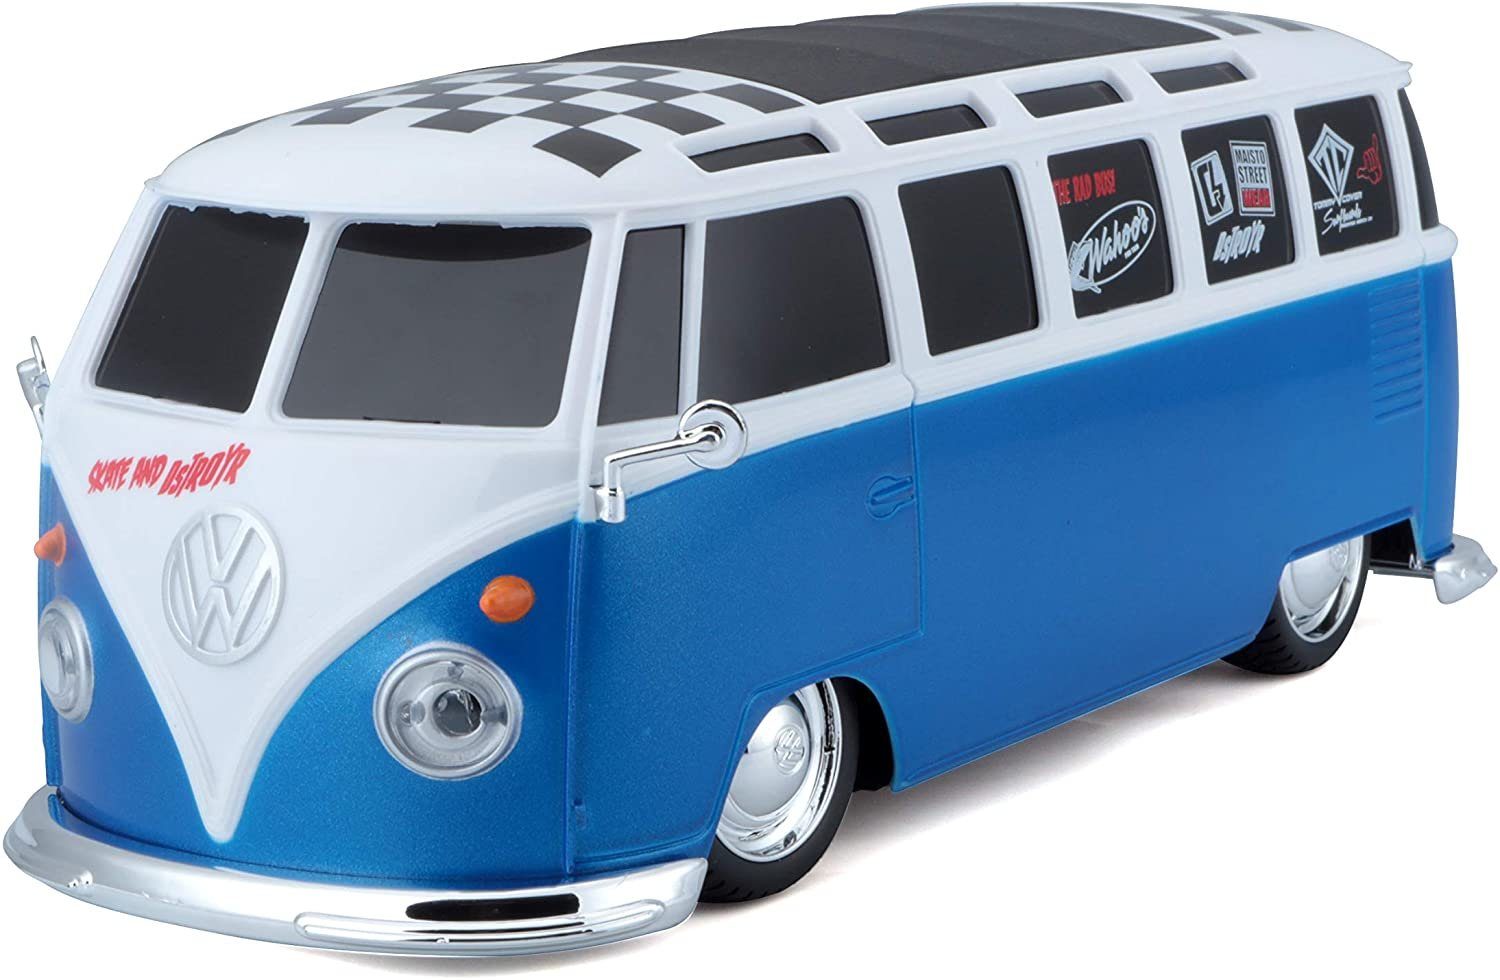 Maisto Tech RC-Auto Ferngesteuertes Auto - VW Van Samba (blau/weiß, Maßstab 1:24), Pistolengriff-Fernsteuerung